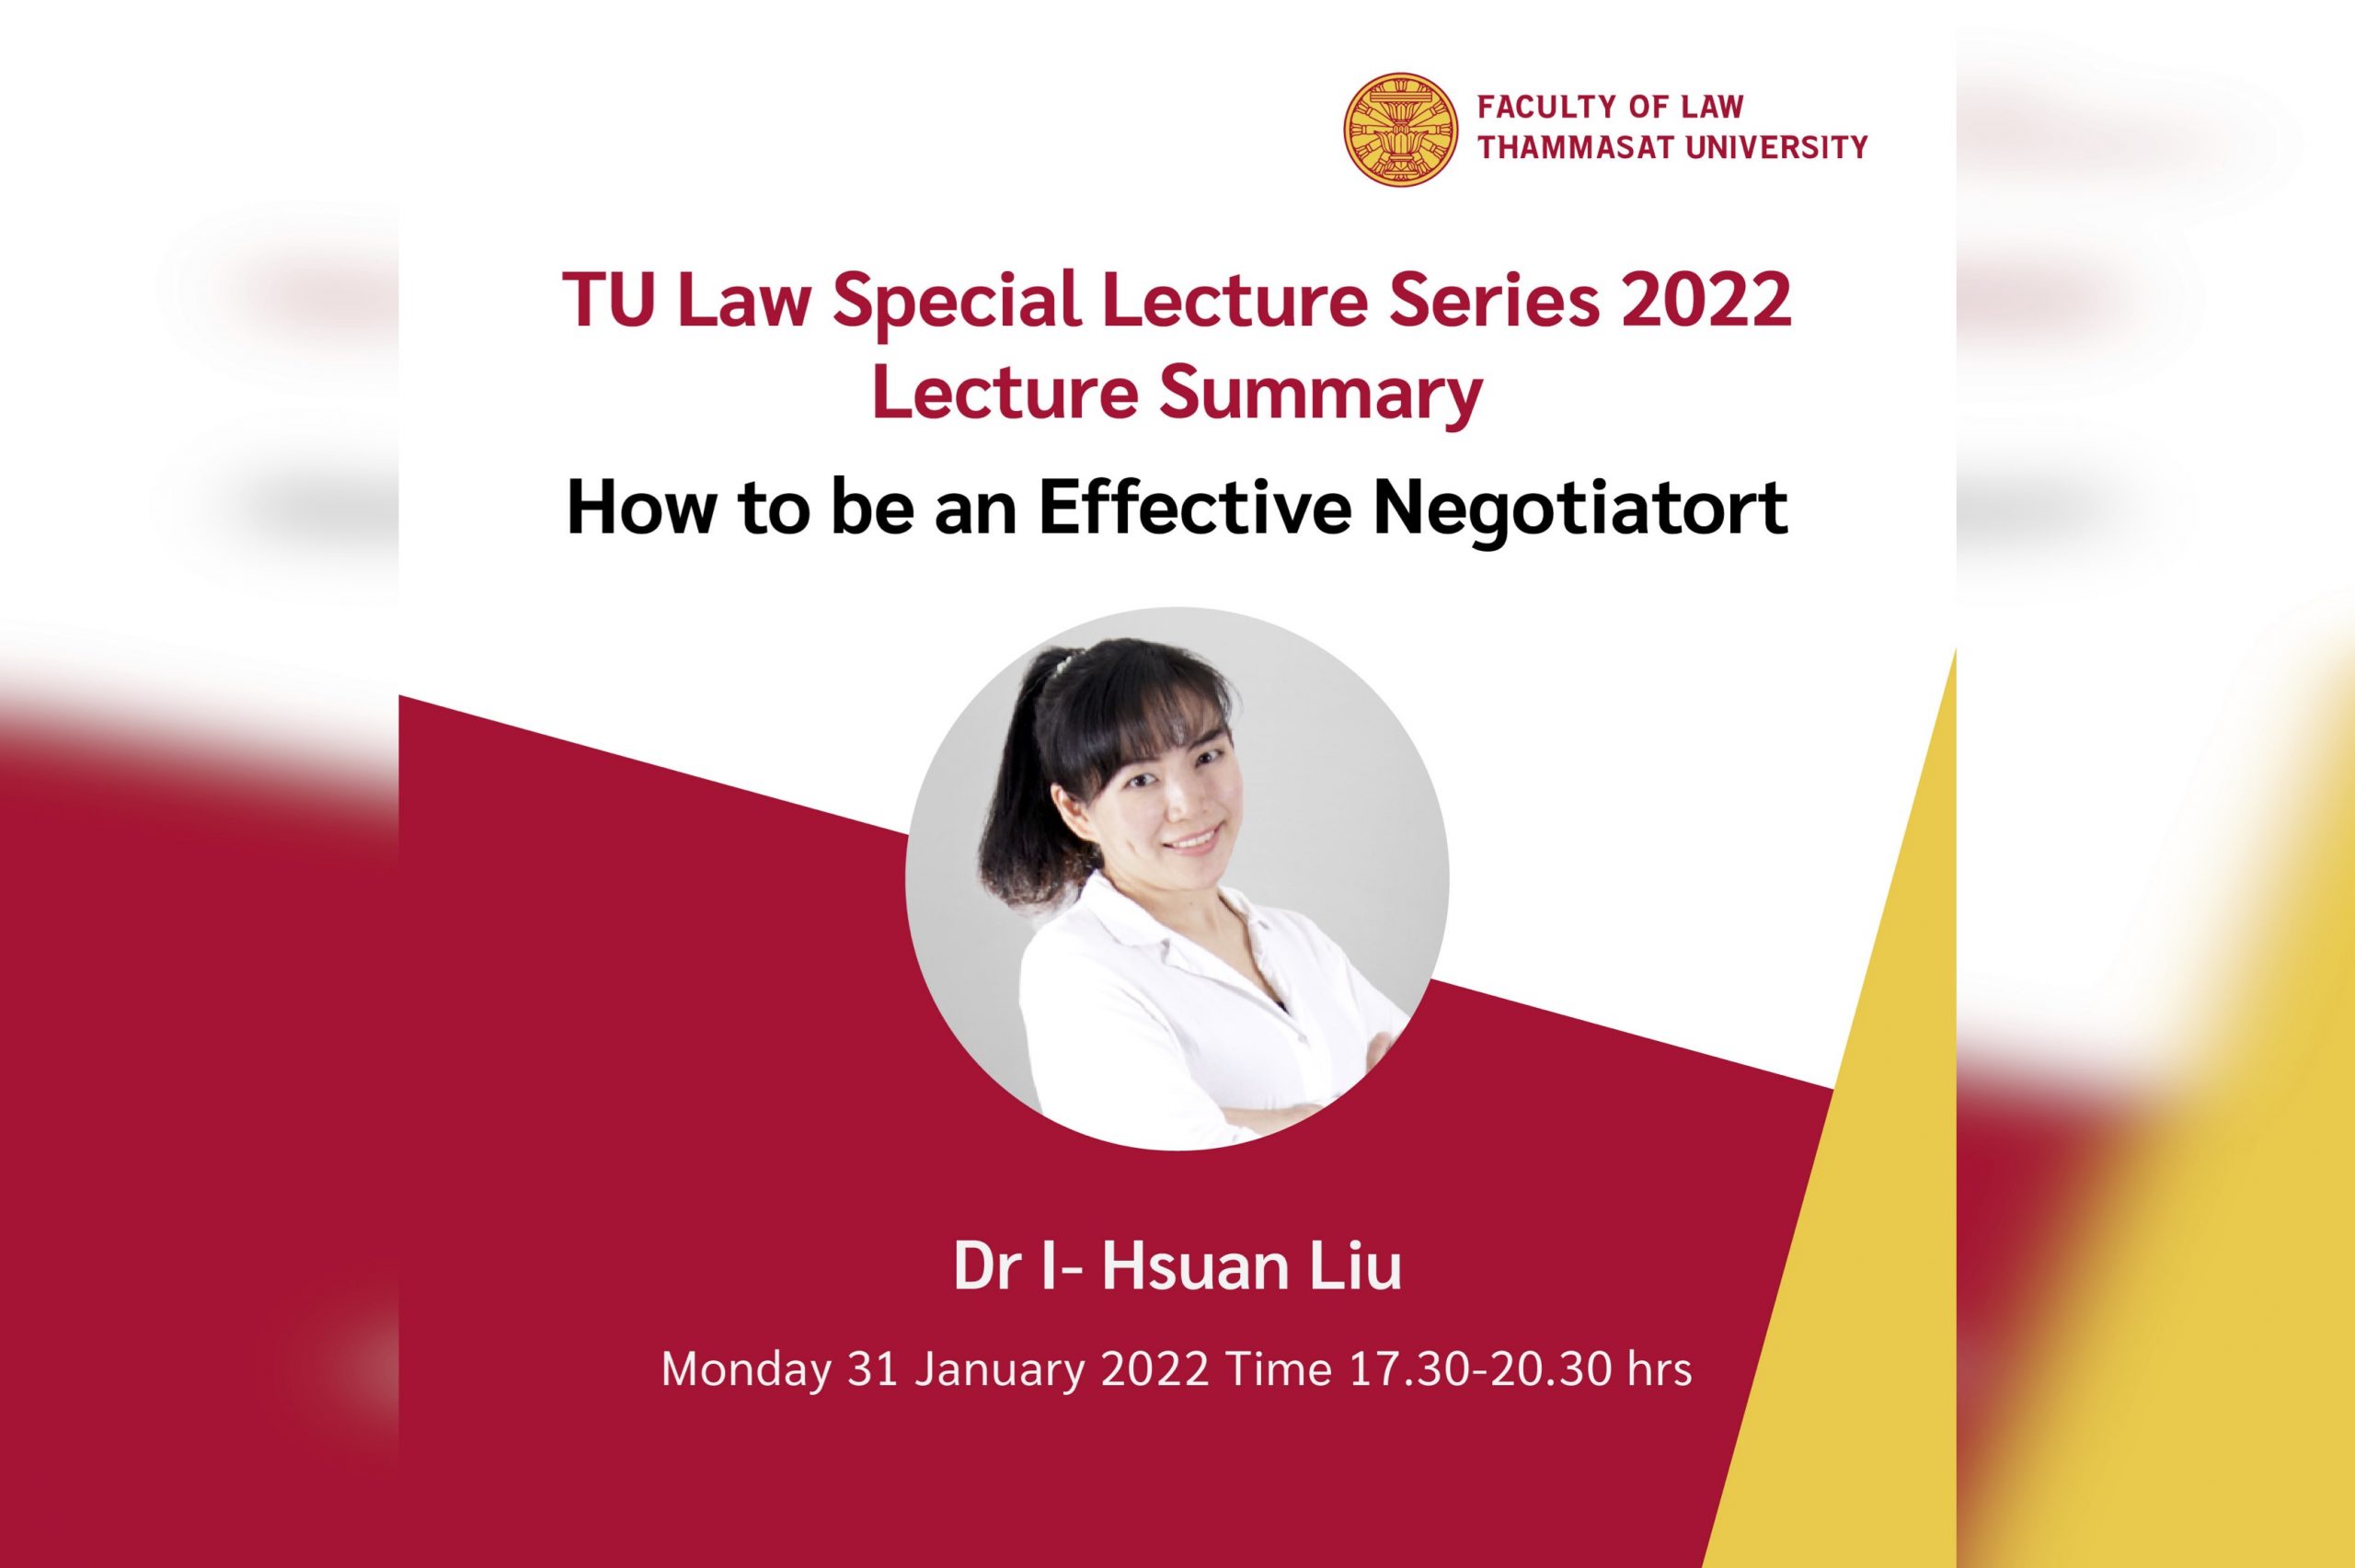 สรุปสาระสำคัญจากการบรรยายพิเศษ หัวข้อ “How to be an Effective Negotiator” โดย Dr I- Hsuan Liu